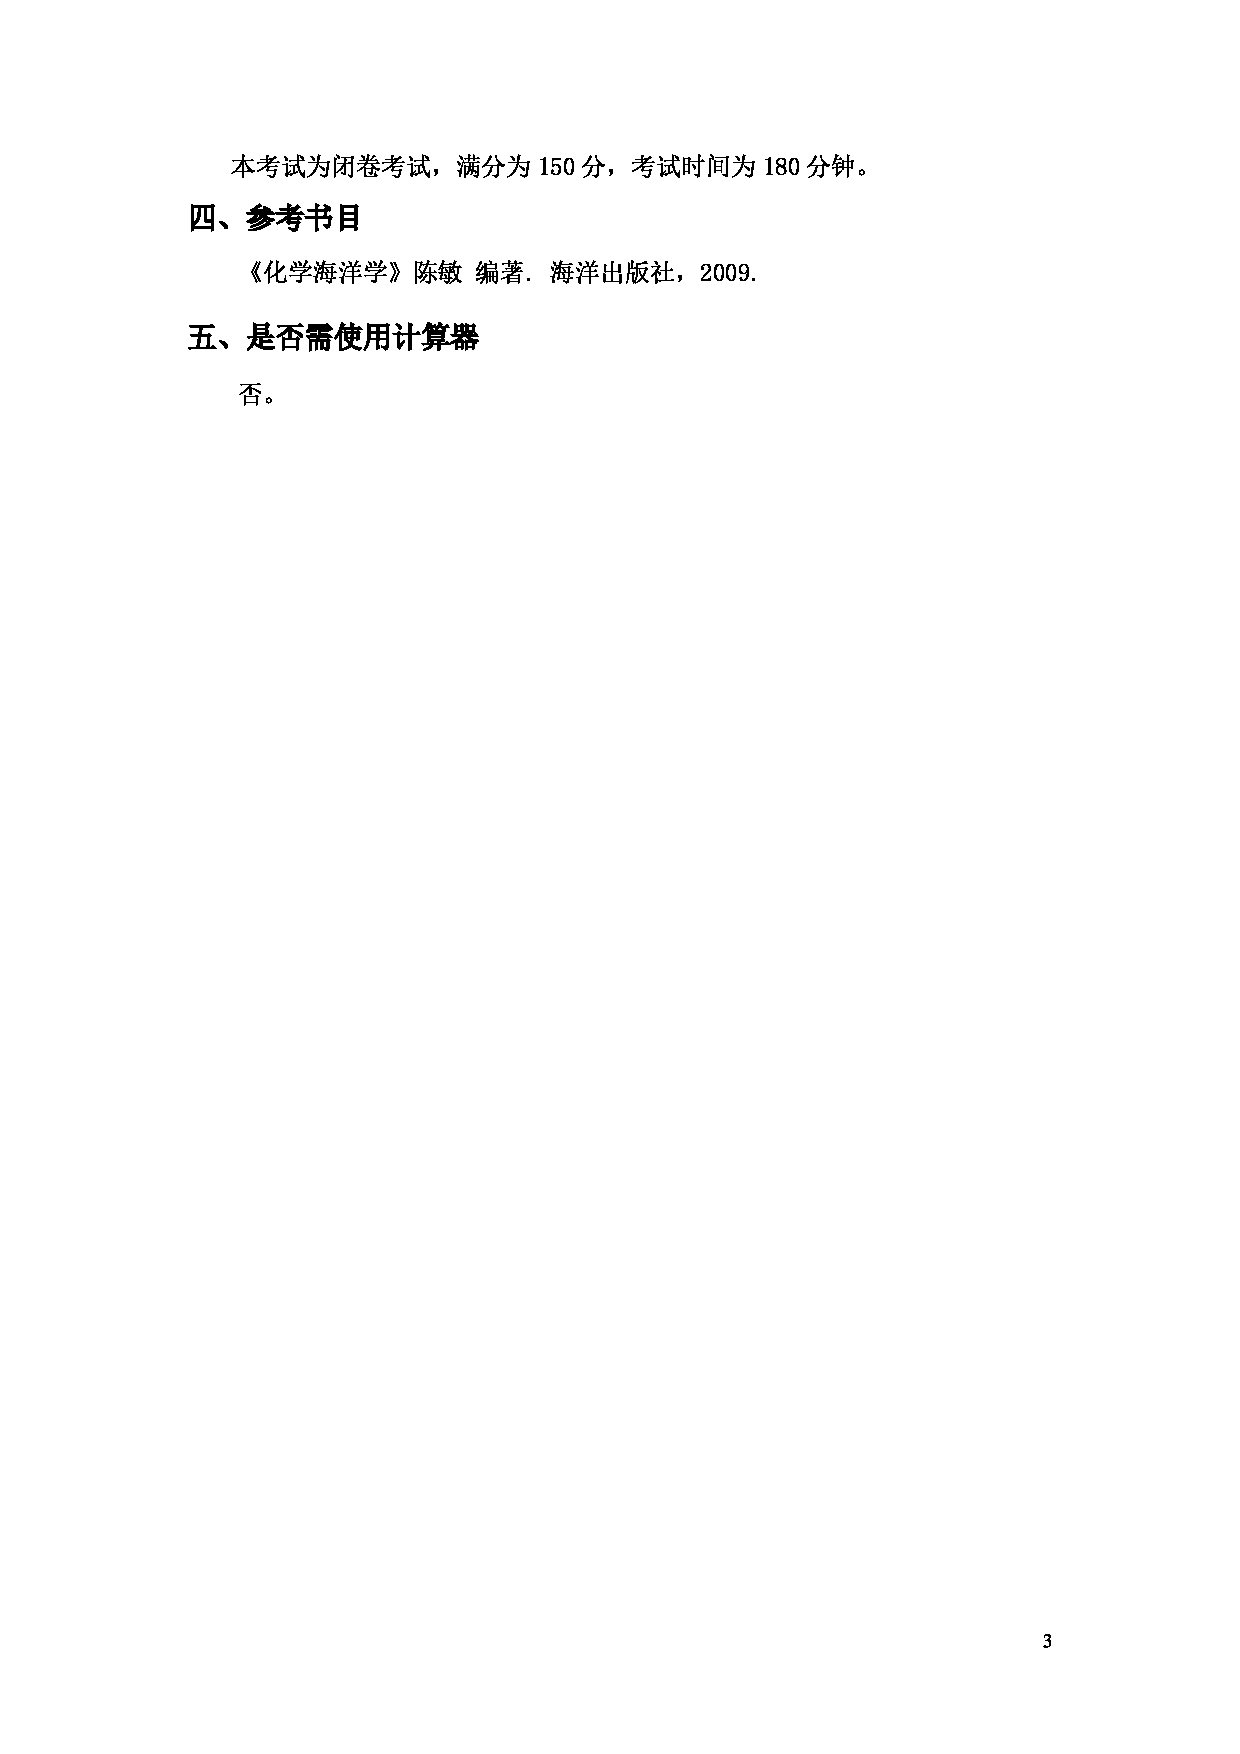 2022考研大纲：上海海洋大学2022年考研自命题科目 703海洋化学 考试大纲第3页